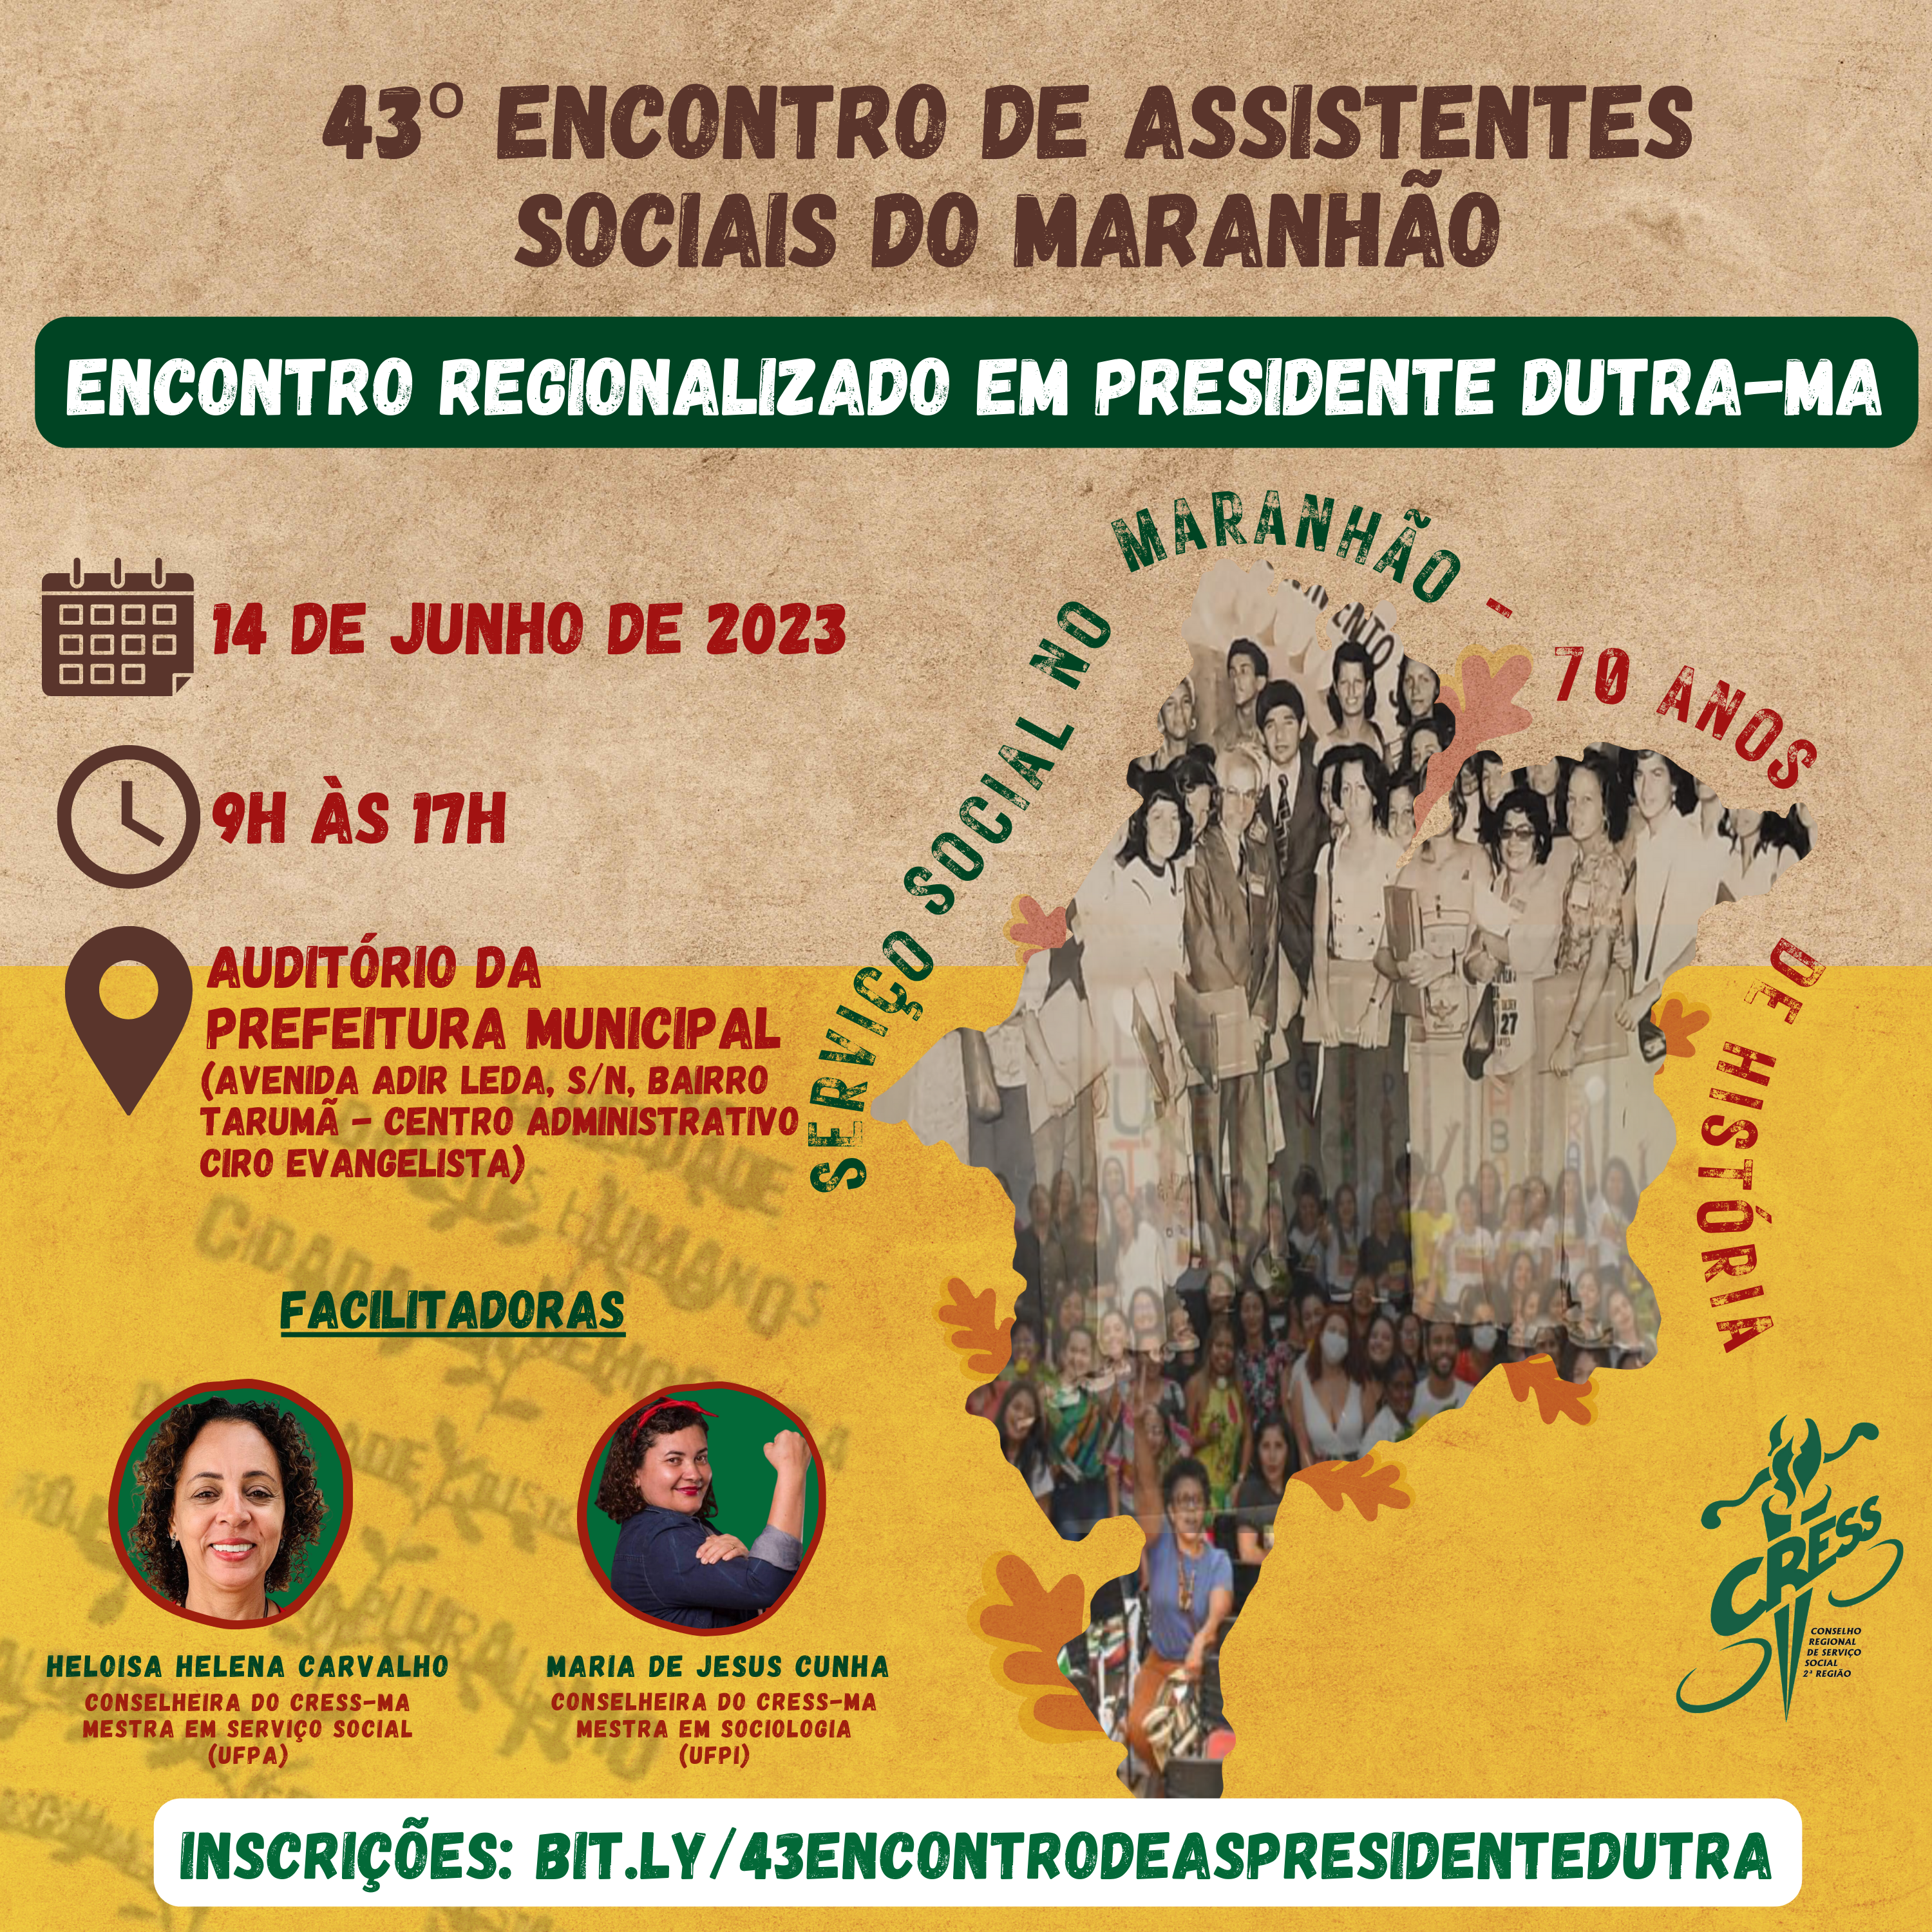 43 Encontro de As no Maranhão - Presidente Dutra ok